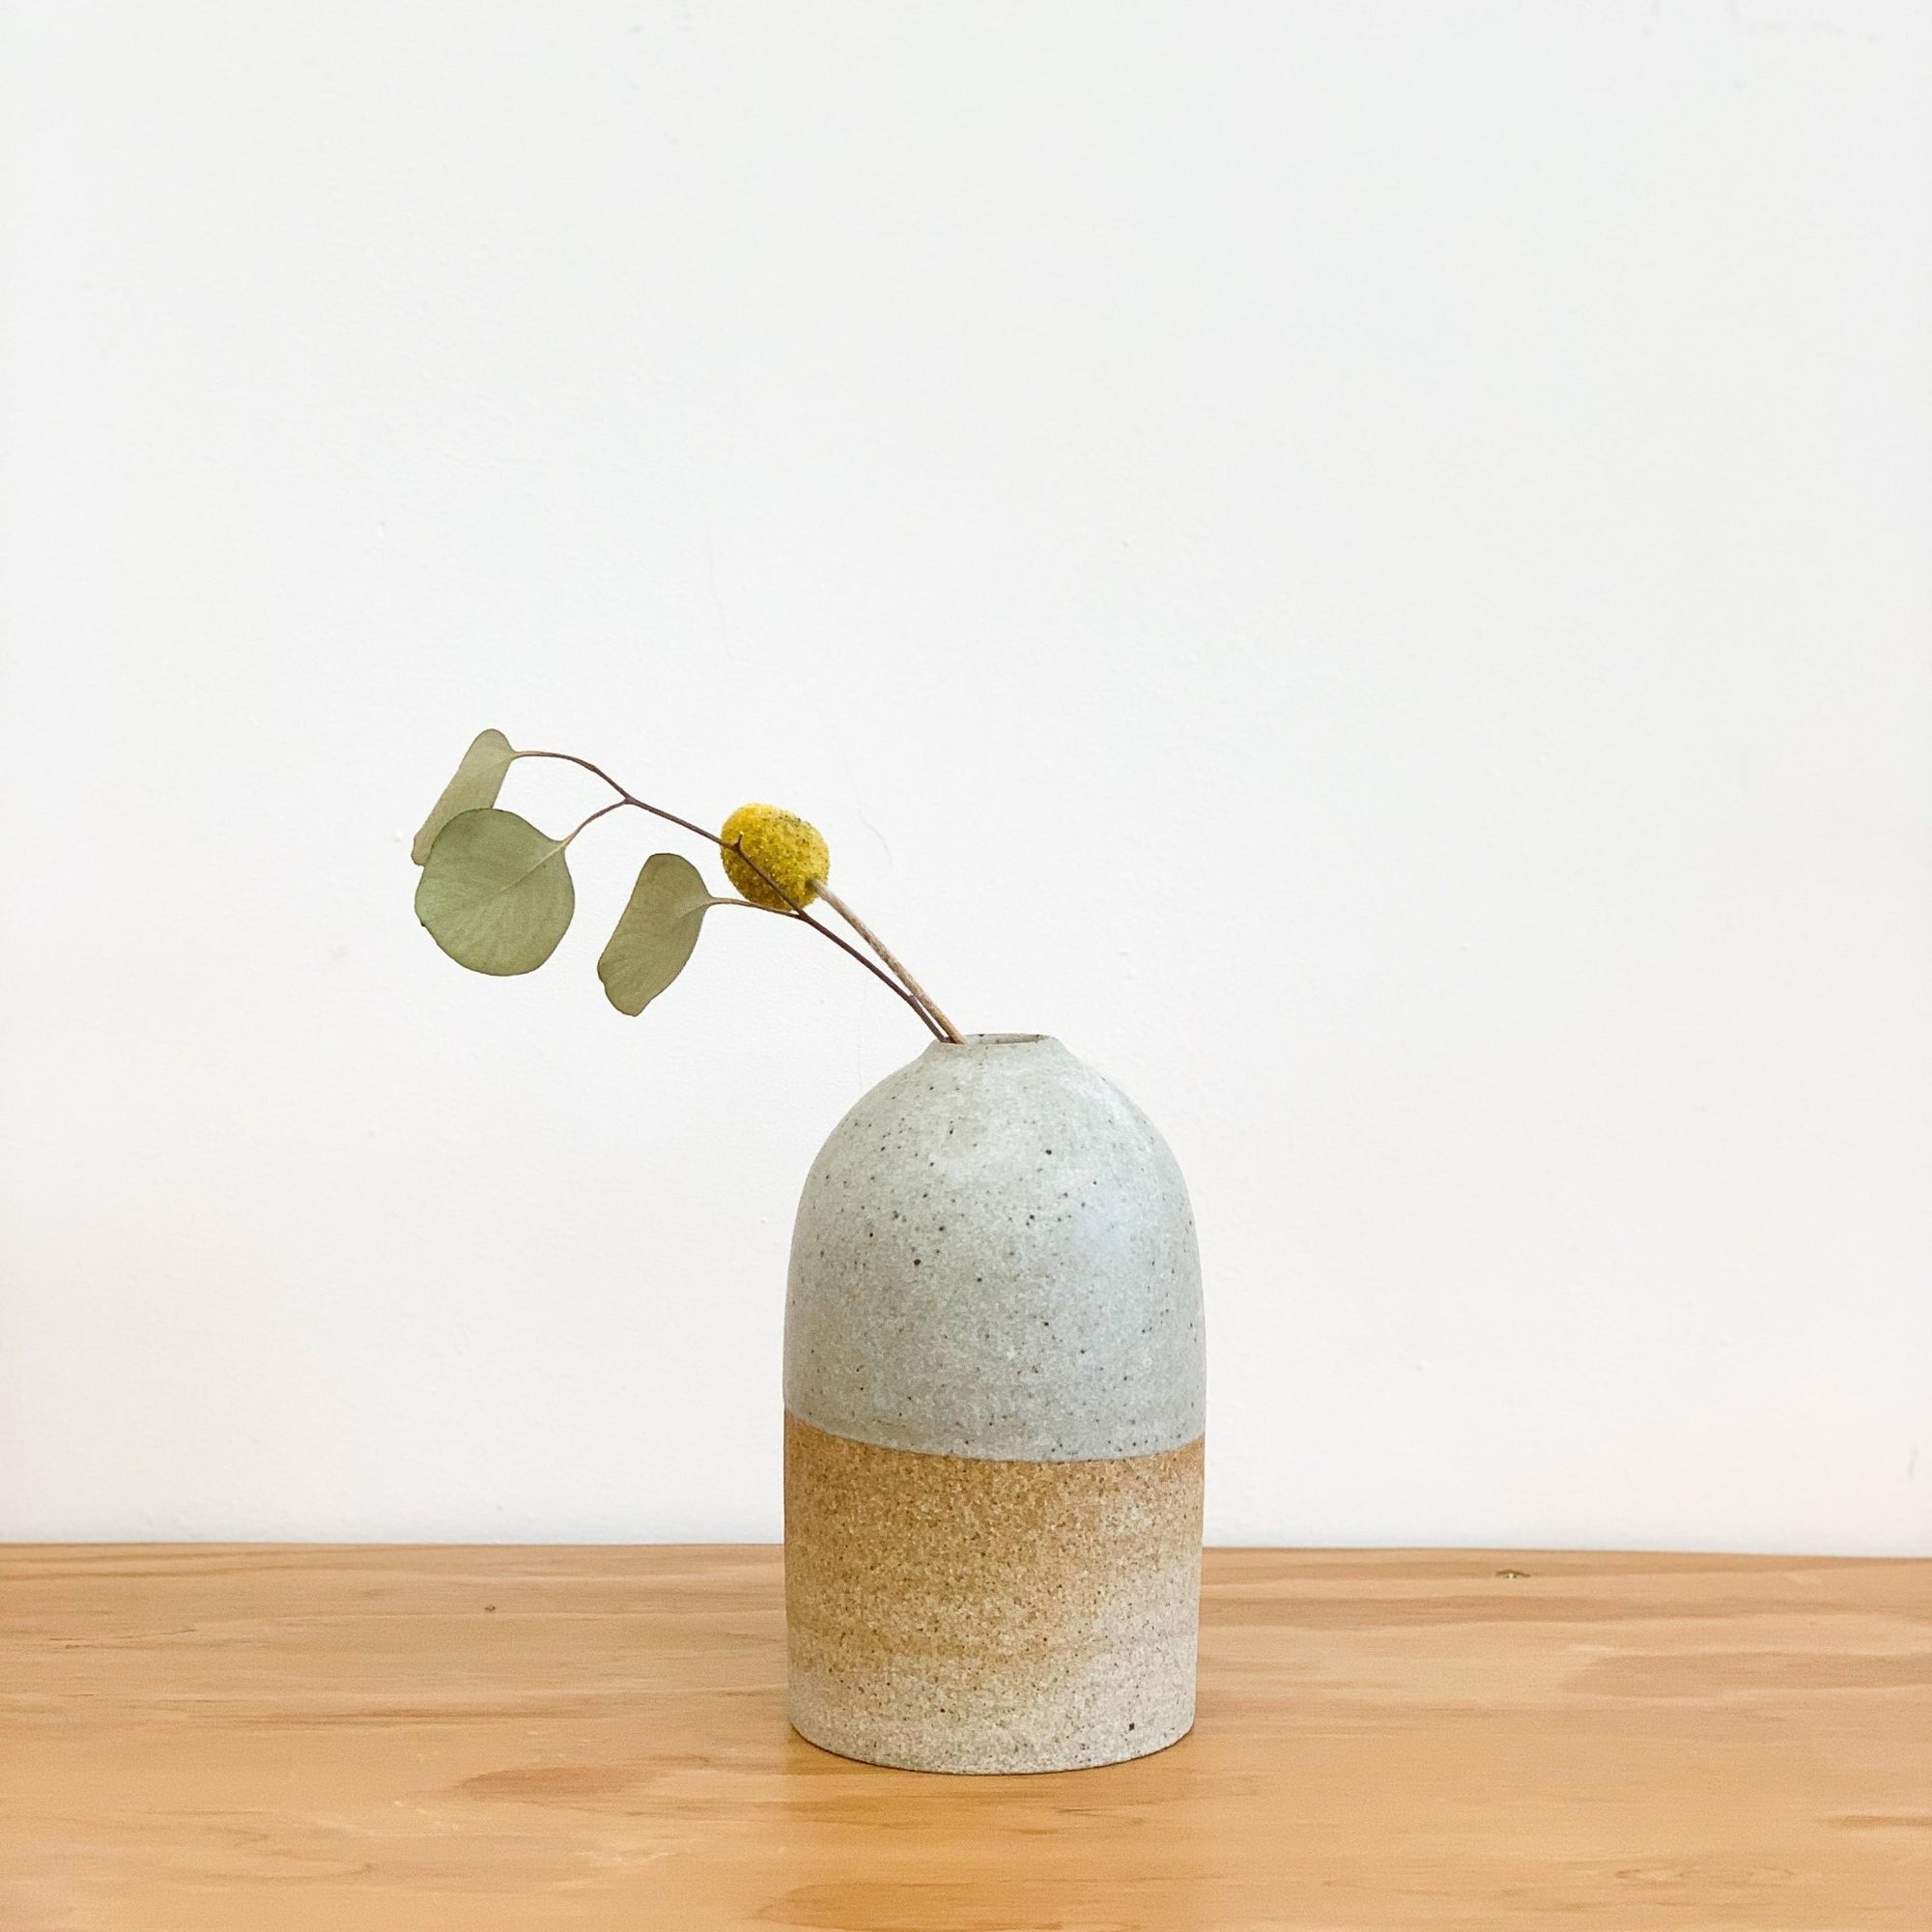 Organic, rounded bud vases by LA based ceramicist Tomoko Morisaki